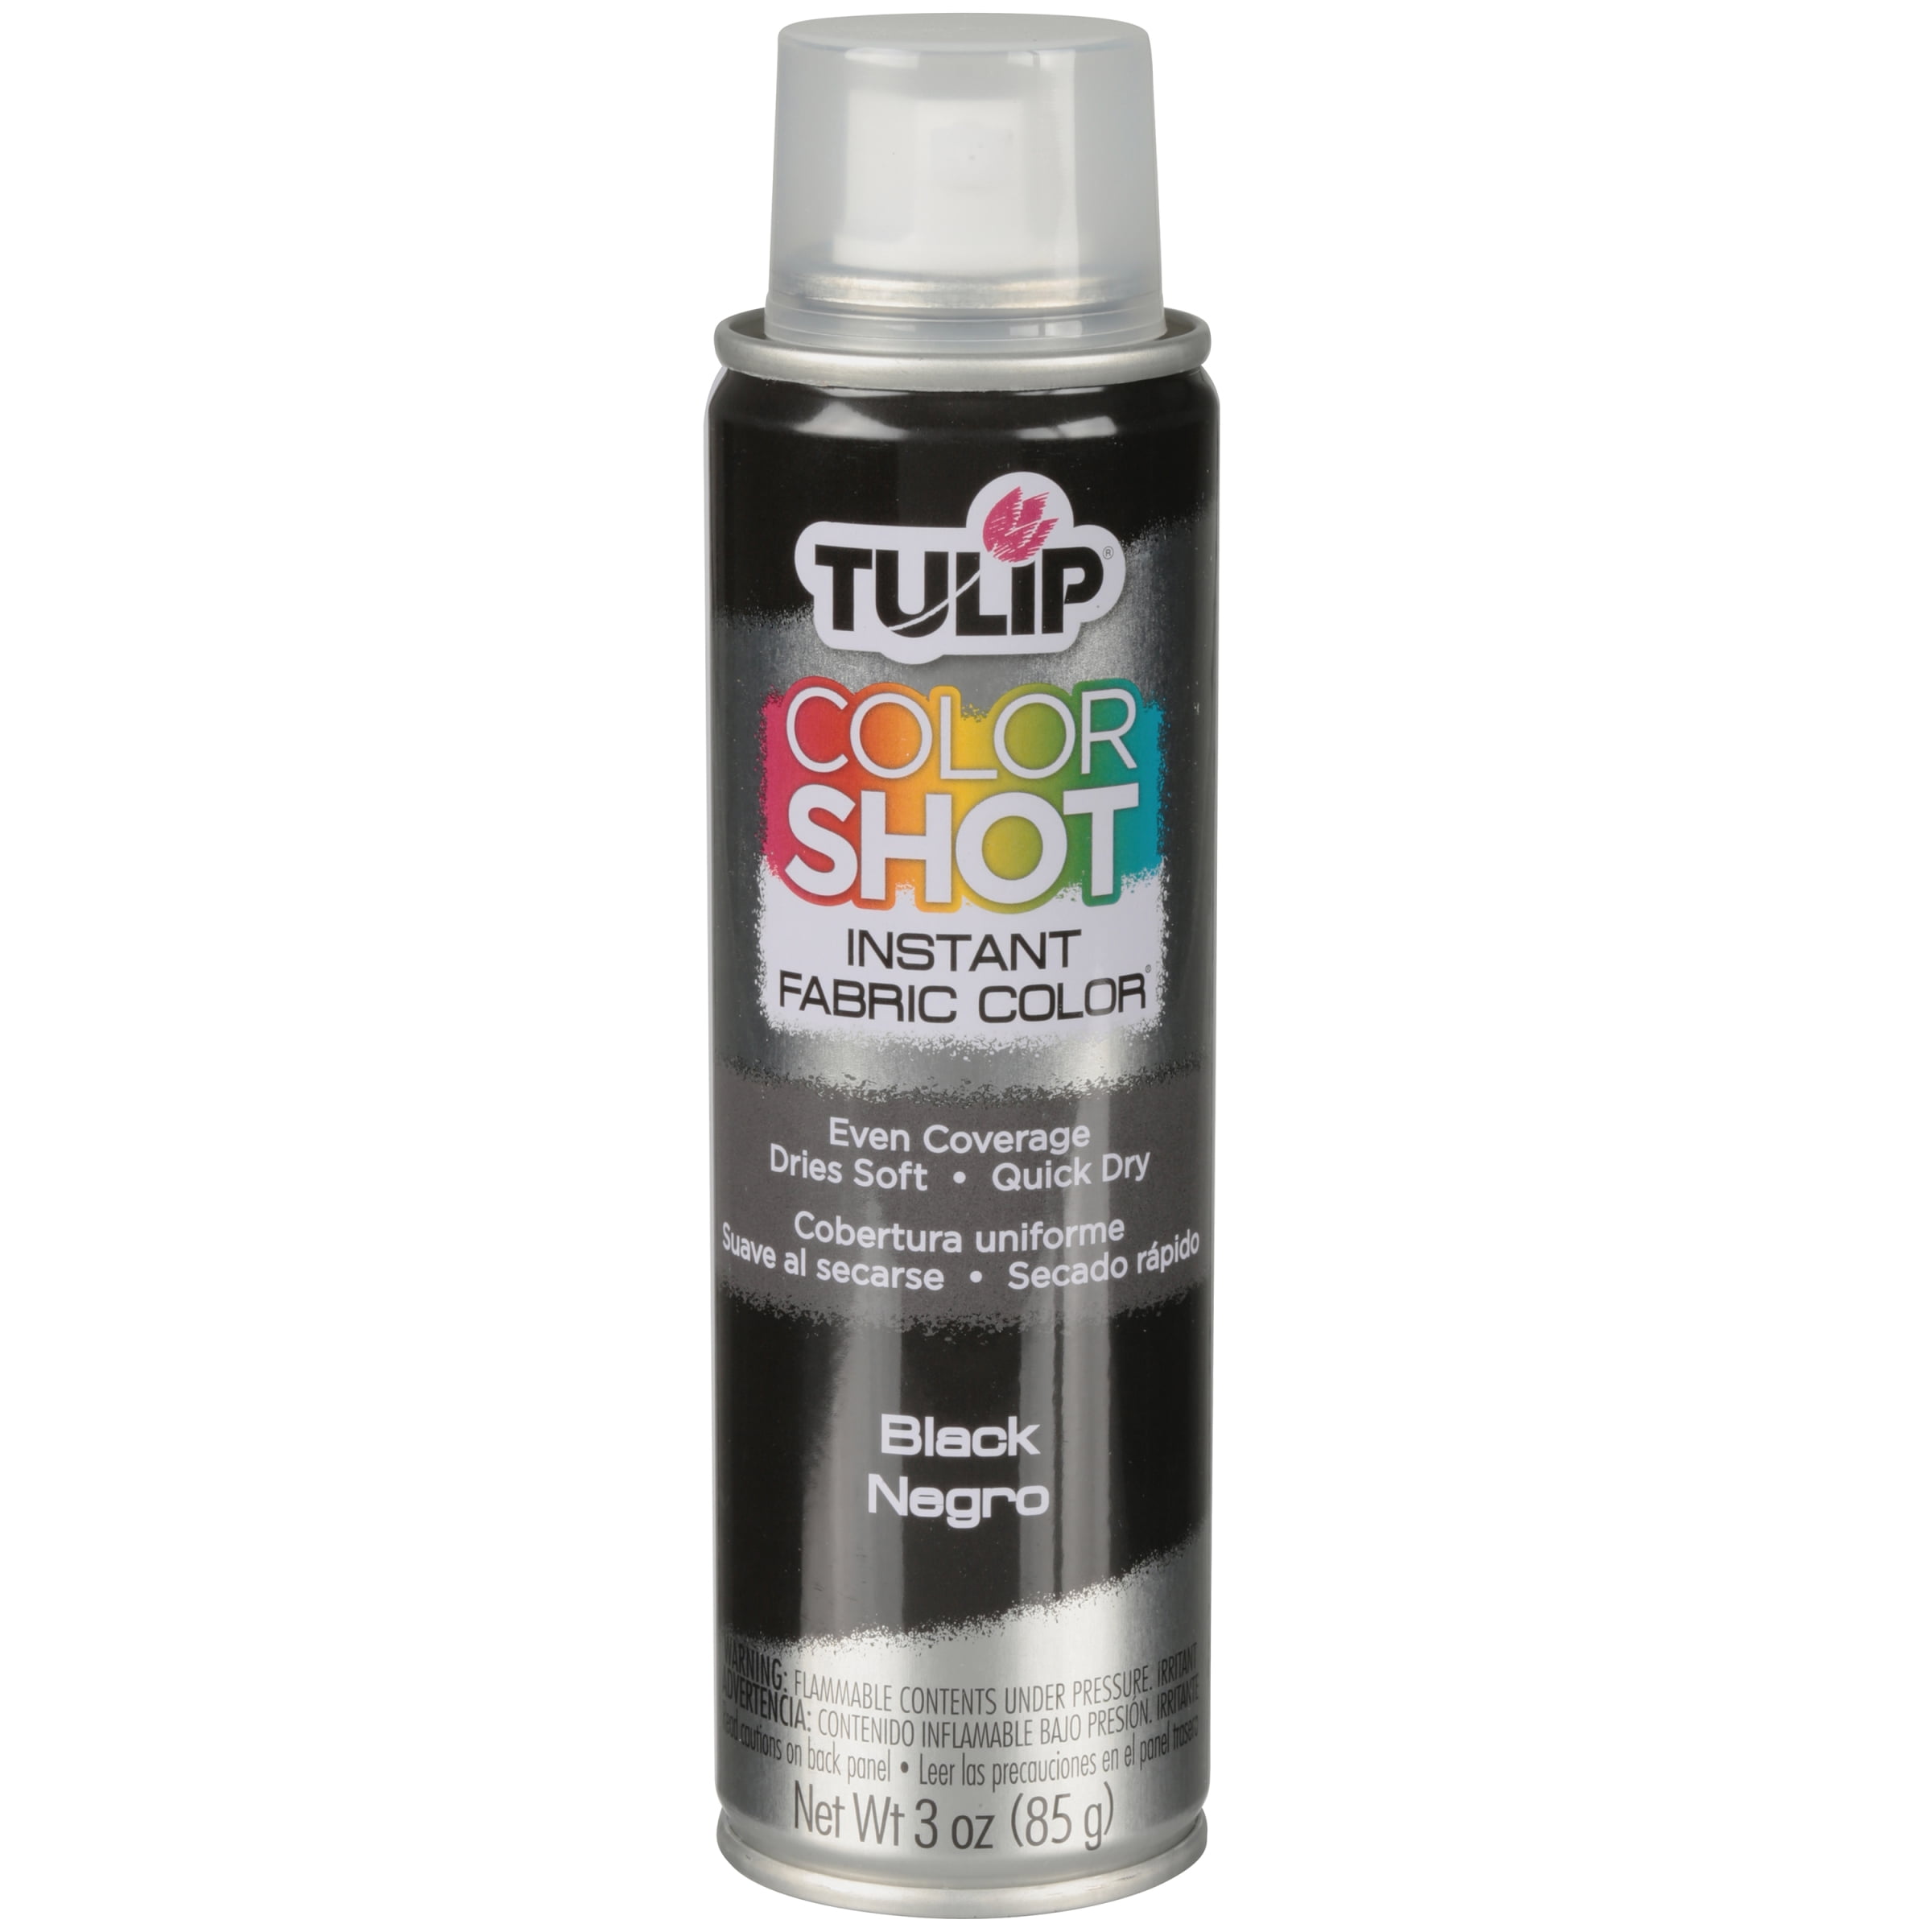 Tulip Fabric Spray Paint 4oz Carded Asphalt 